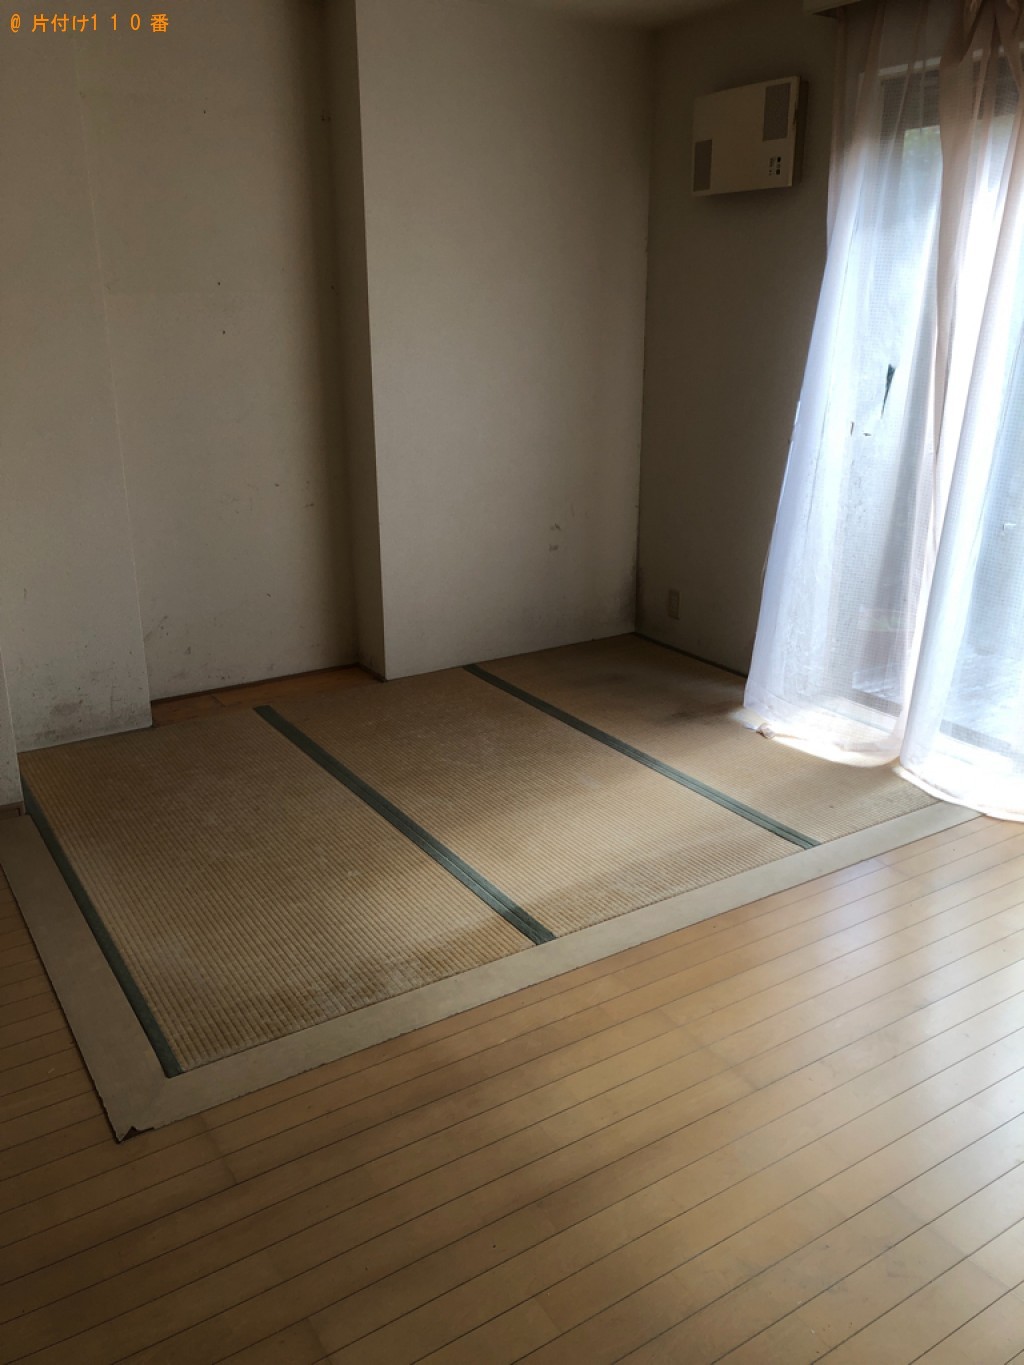 【鳥取市】6人用ダイニングテーブル、二段ベッド等の回収・処分